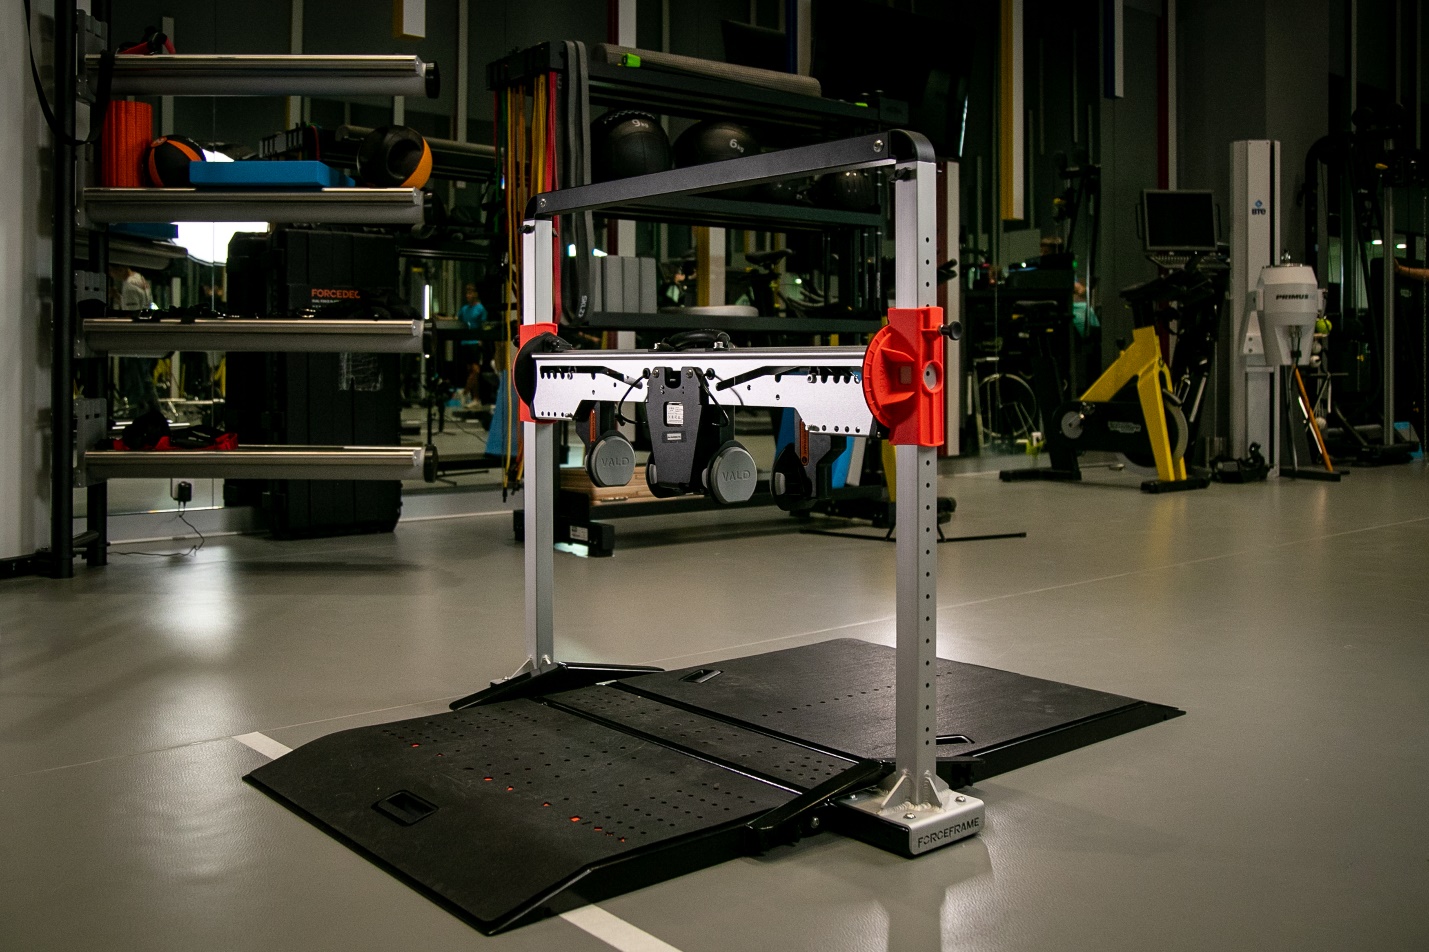 Модульная портативная система Force Frame для изометрических тренировок, а также для измерения силы и дисбаланса в группах мышц бедра, колена, плеч, лодыжки и шеи